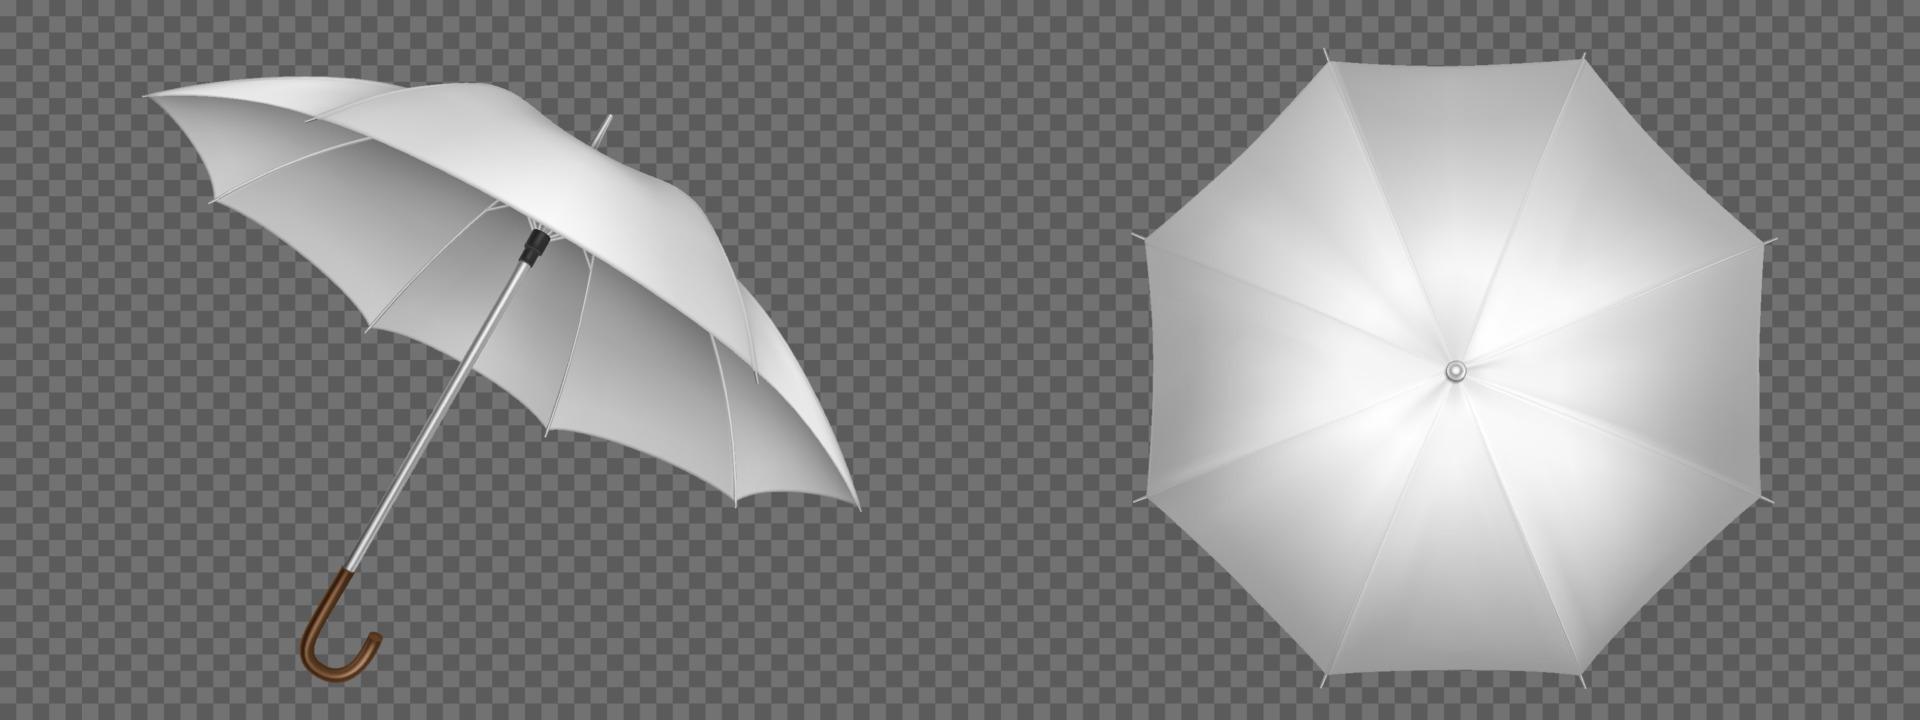 realistische weiße regenschirmvorder- und draufsicht vektor